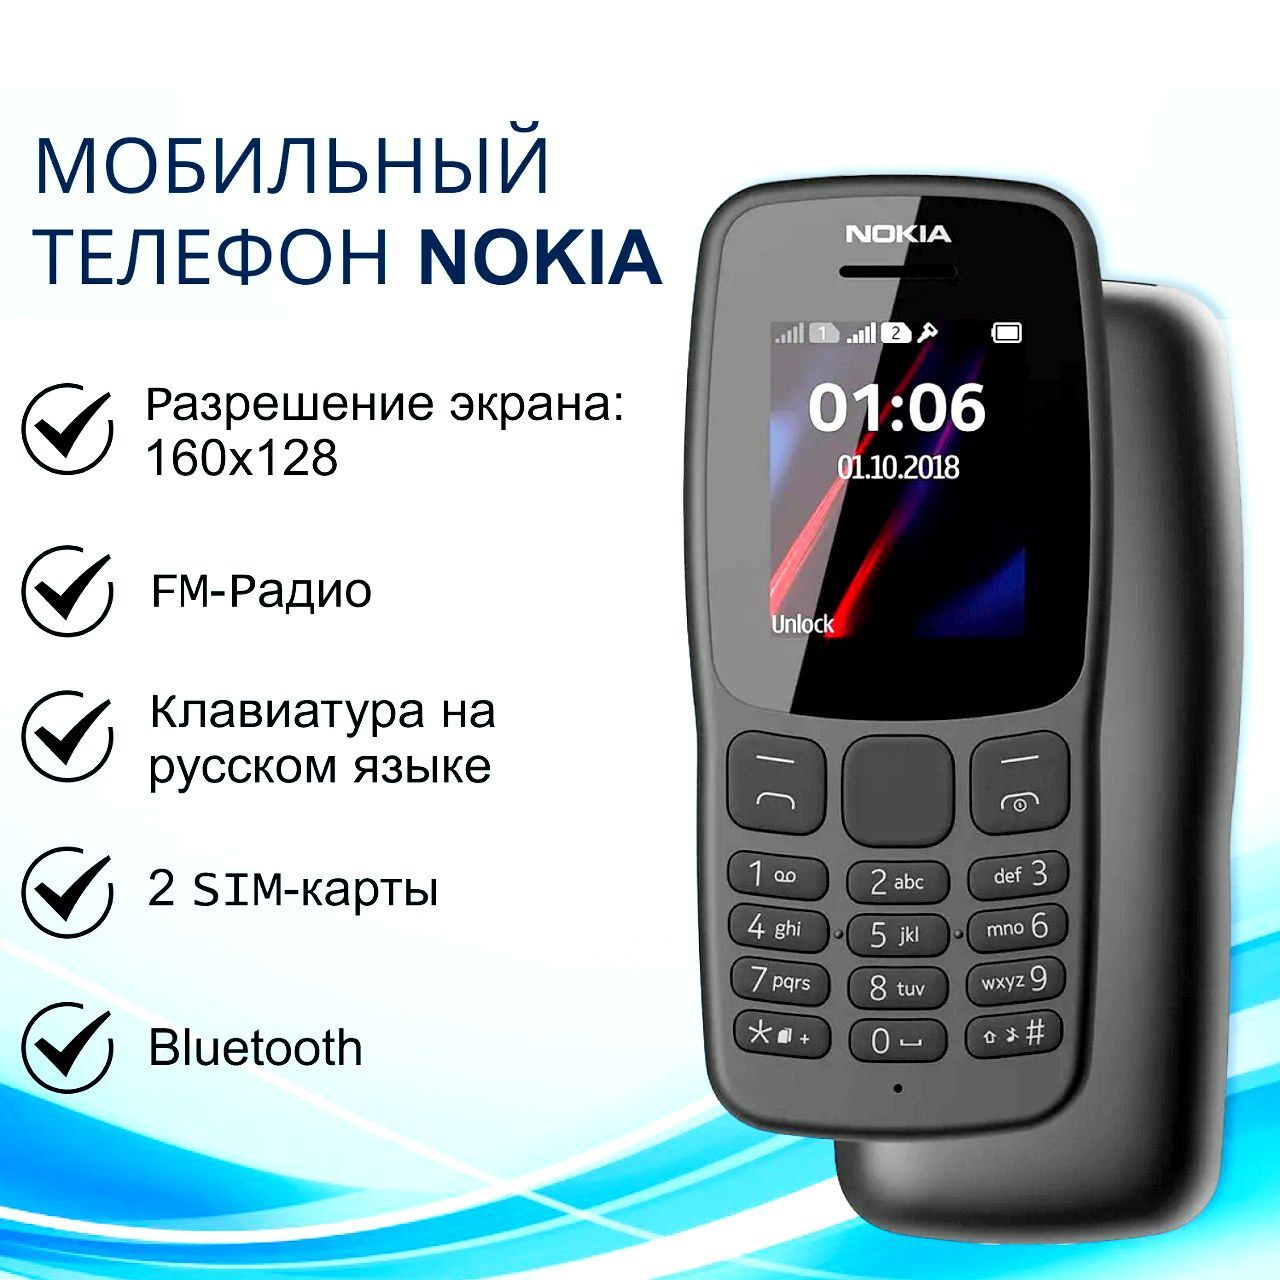 NokiaМобильныйтелефонтелефонНокиа,черный.Уцененныйтовар